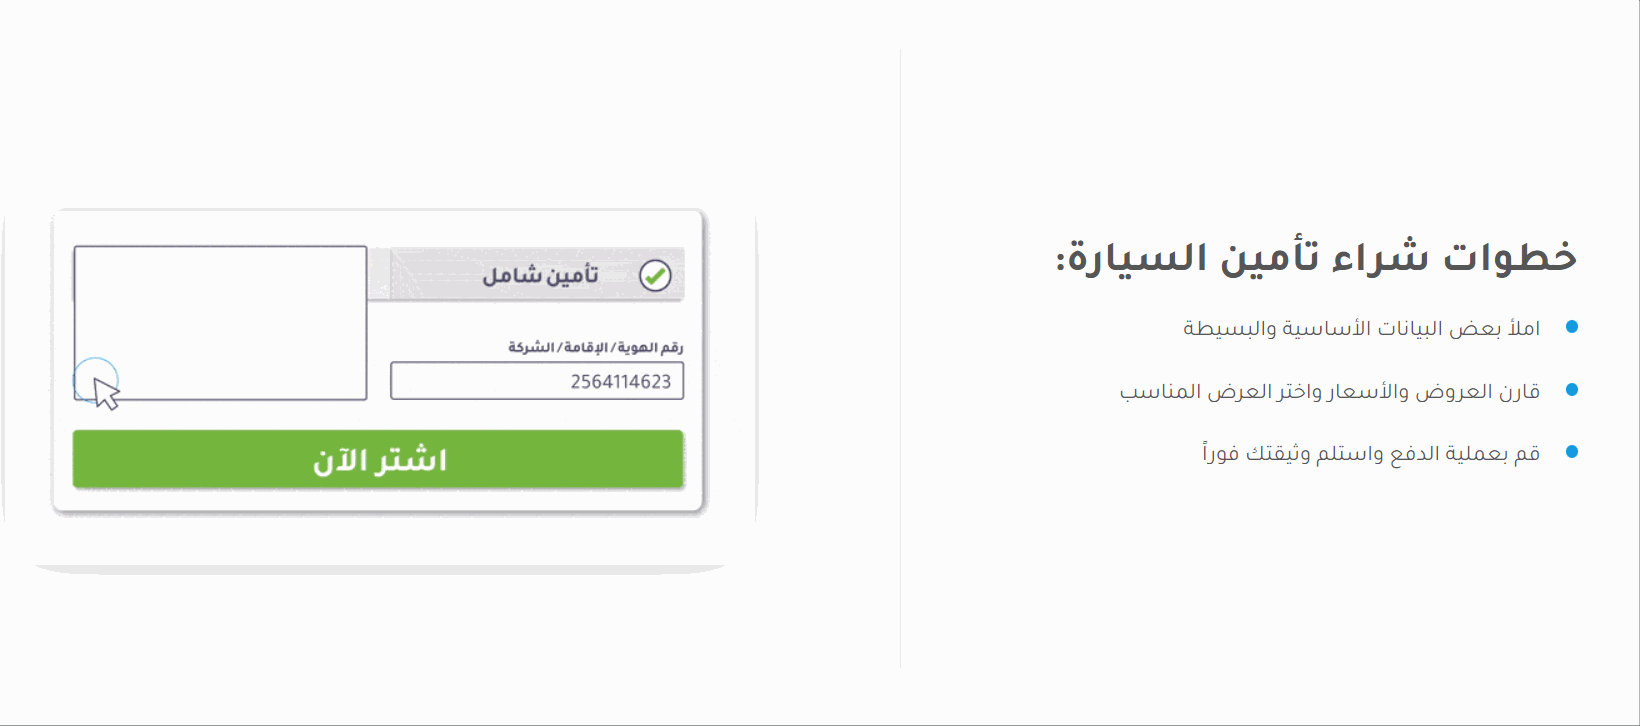 كيفية تحديد تأمين سيارات رخيص ومقارنة أسعار التأمين في السعودية 6